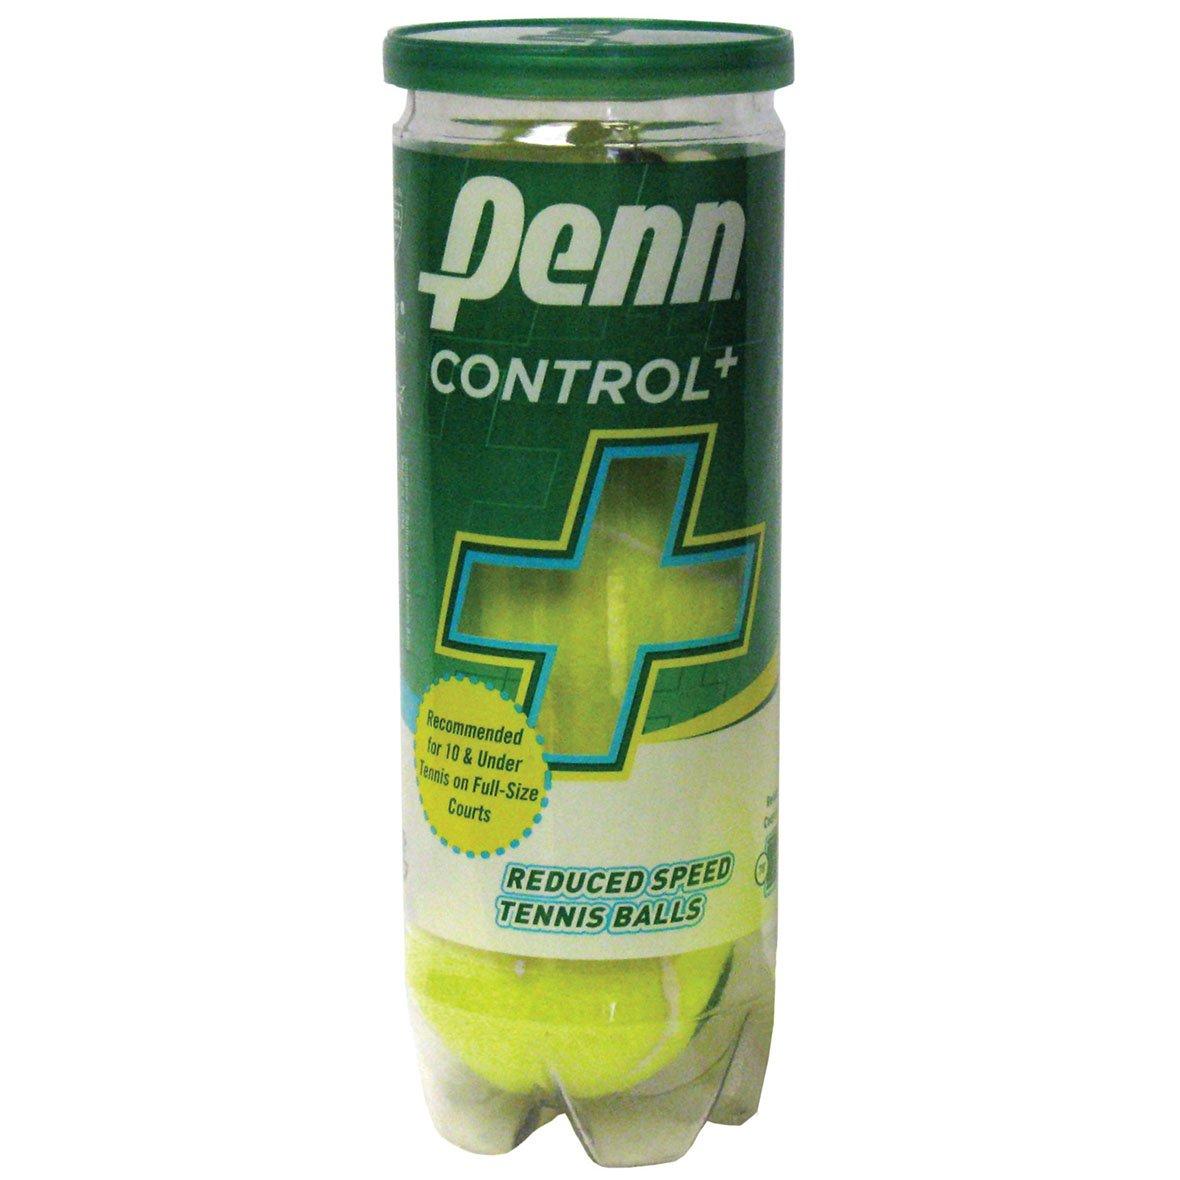 Penn Control Plus 3-Ball Can